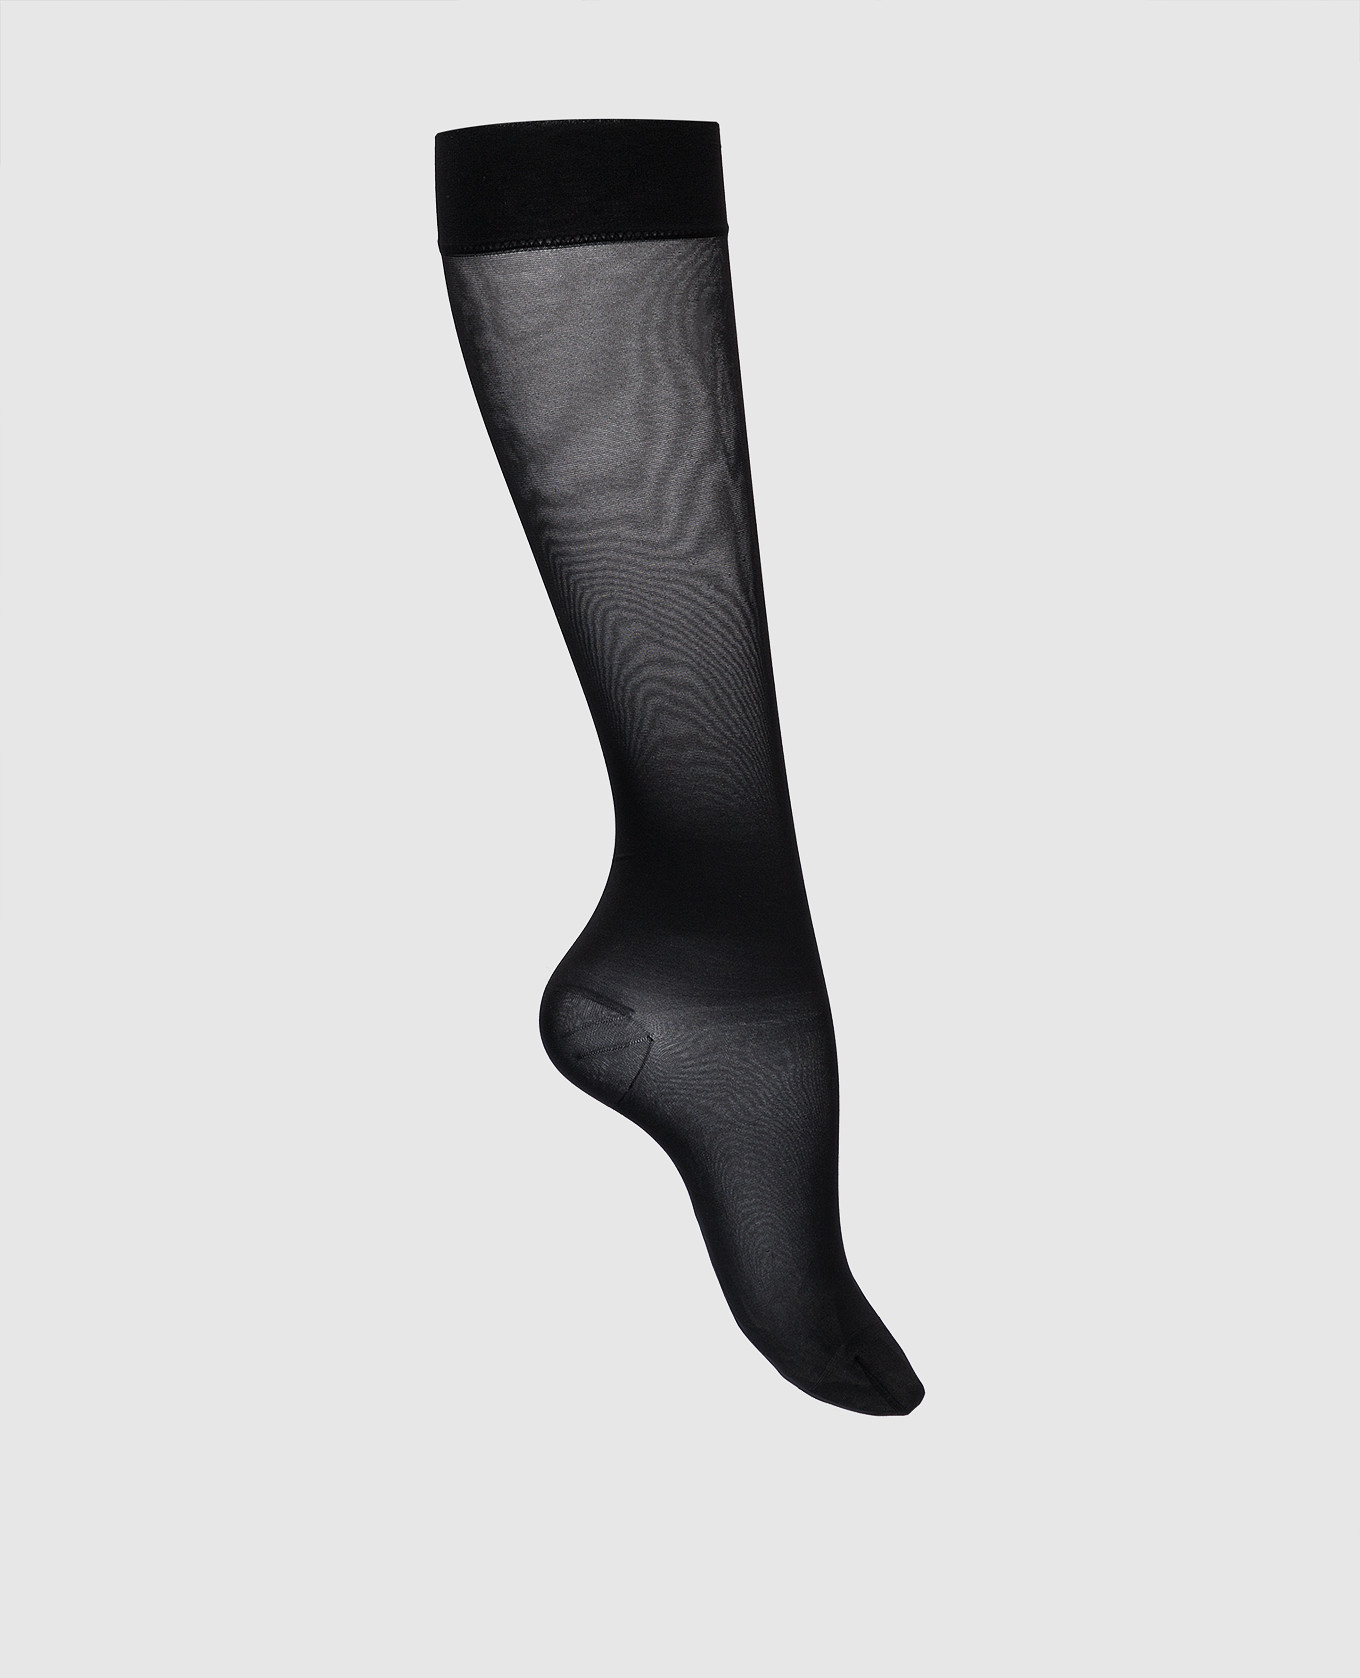 Black stockings 30 den